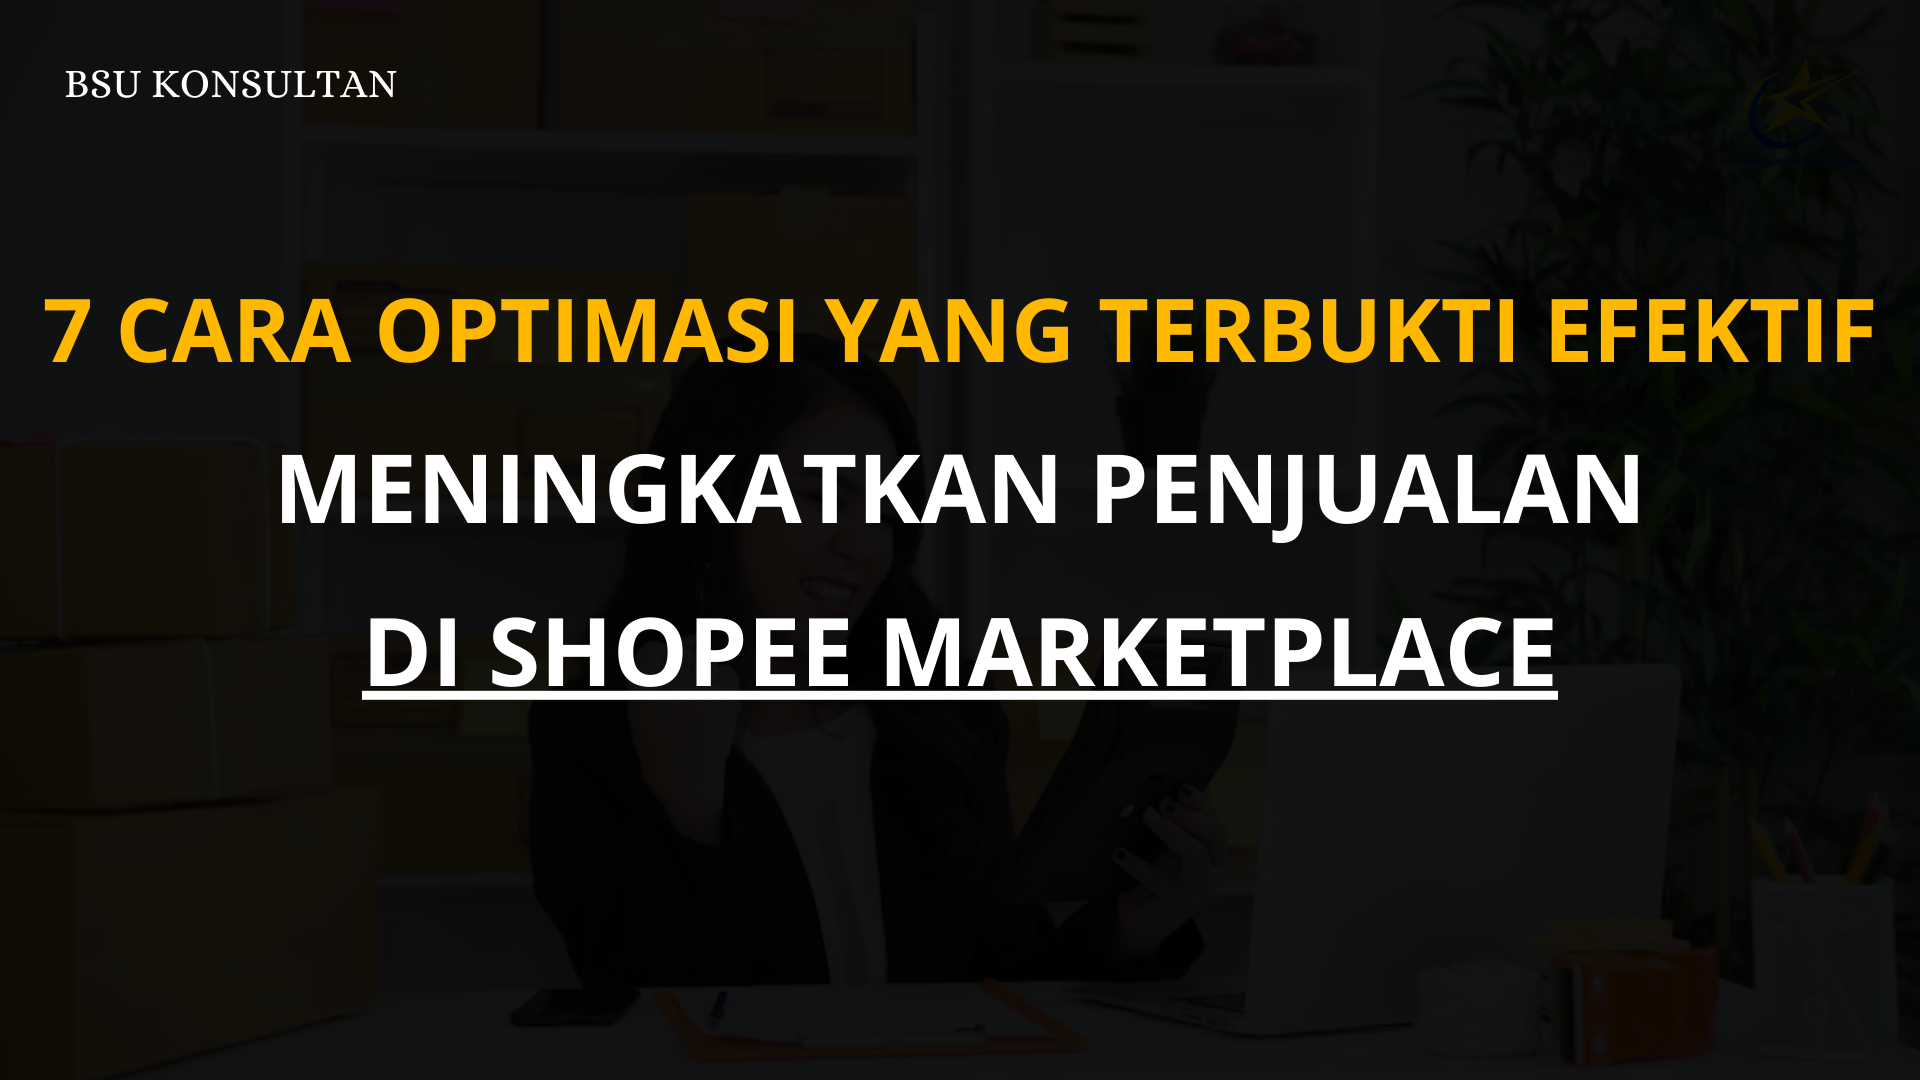 7 Cara Optimasi yang Terbukti Efektif Meningkatkan Penjualan di Shopee Marketplace